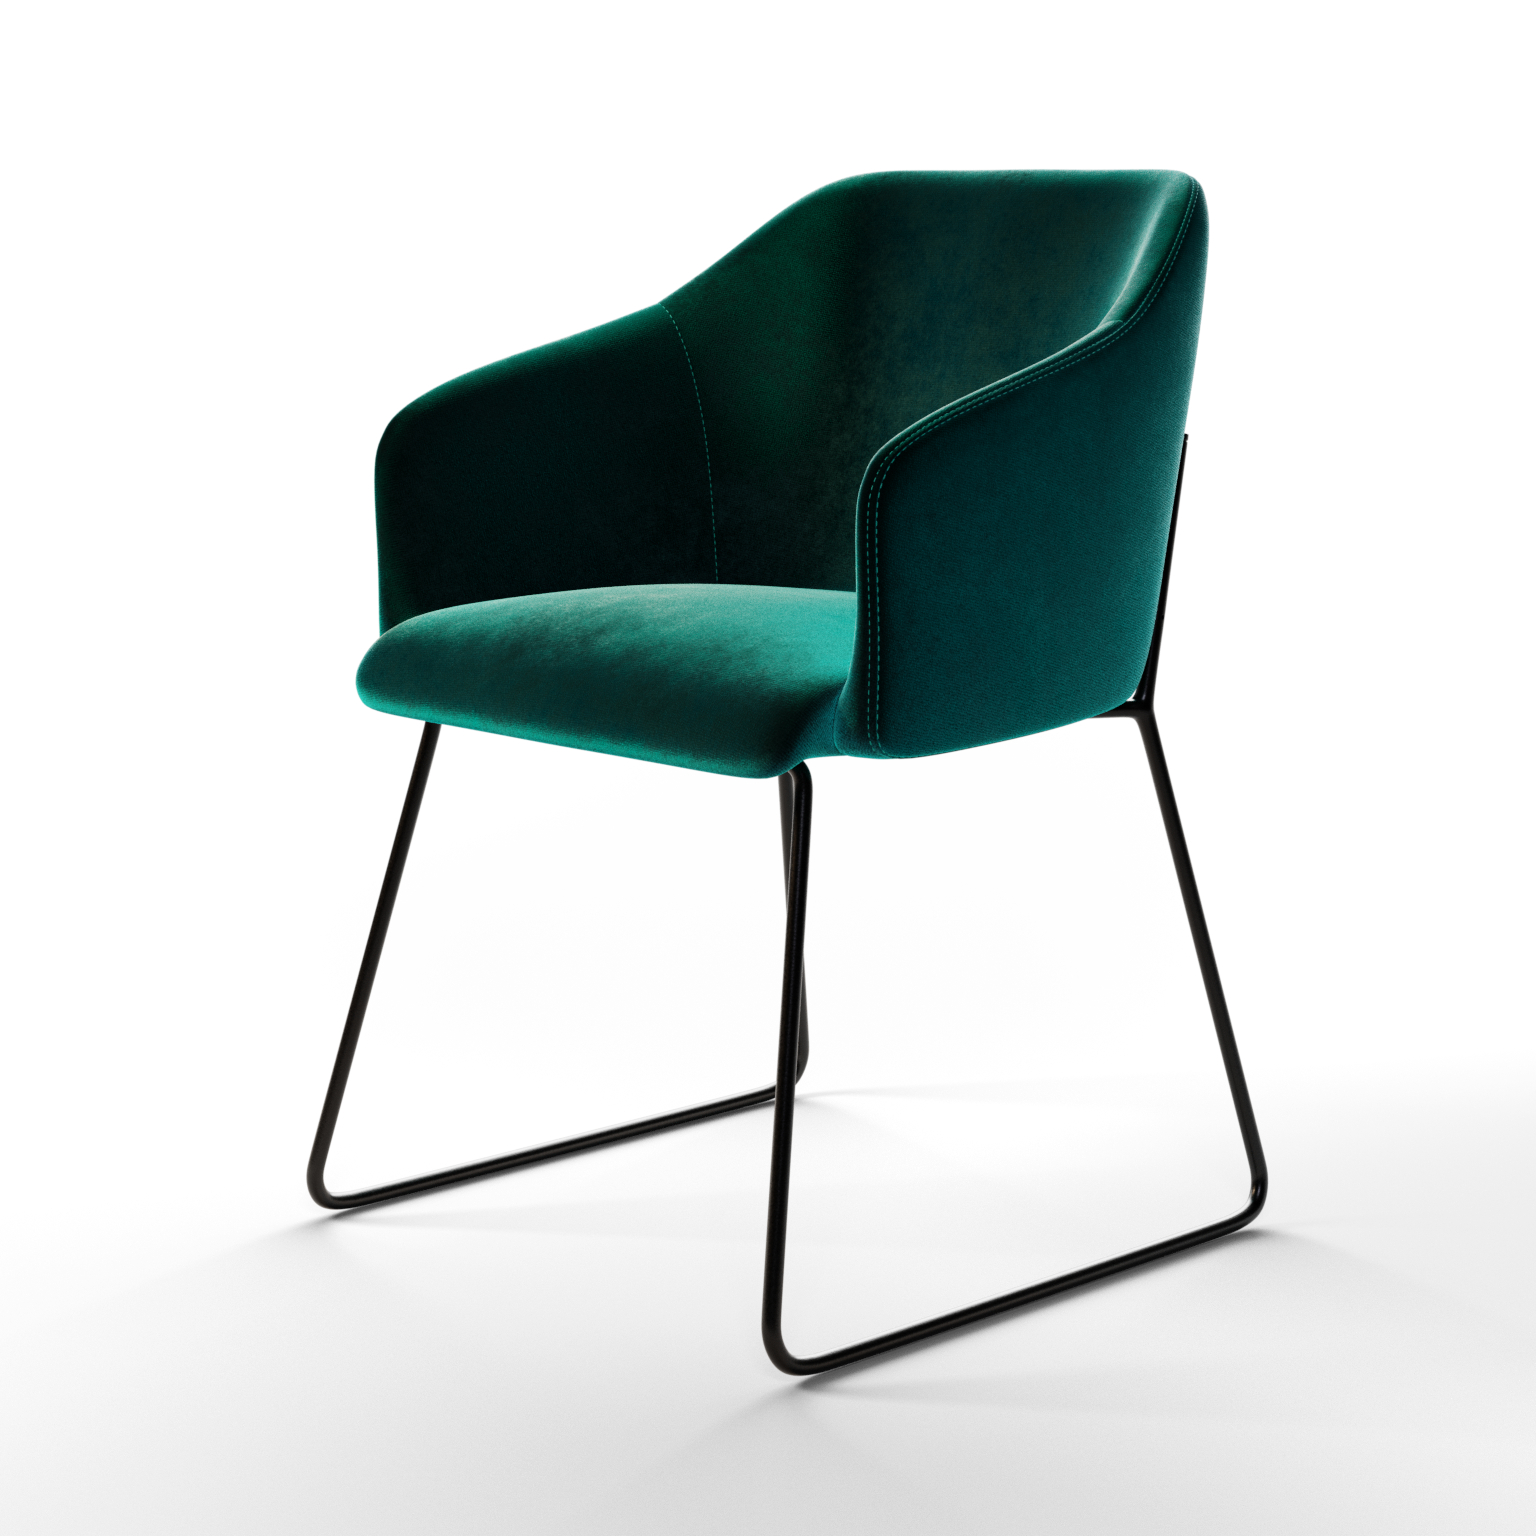 1a-krzesło-modelowanie-3d-packshot-3d-zatarski